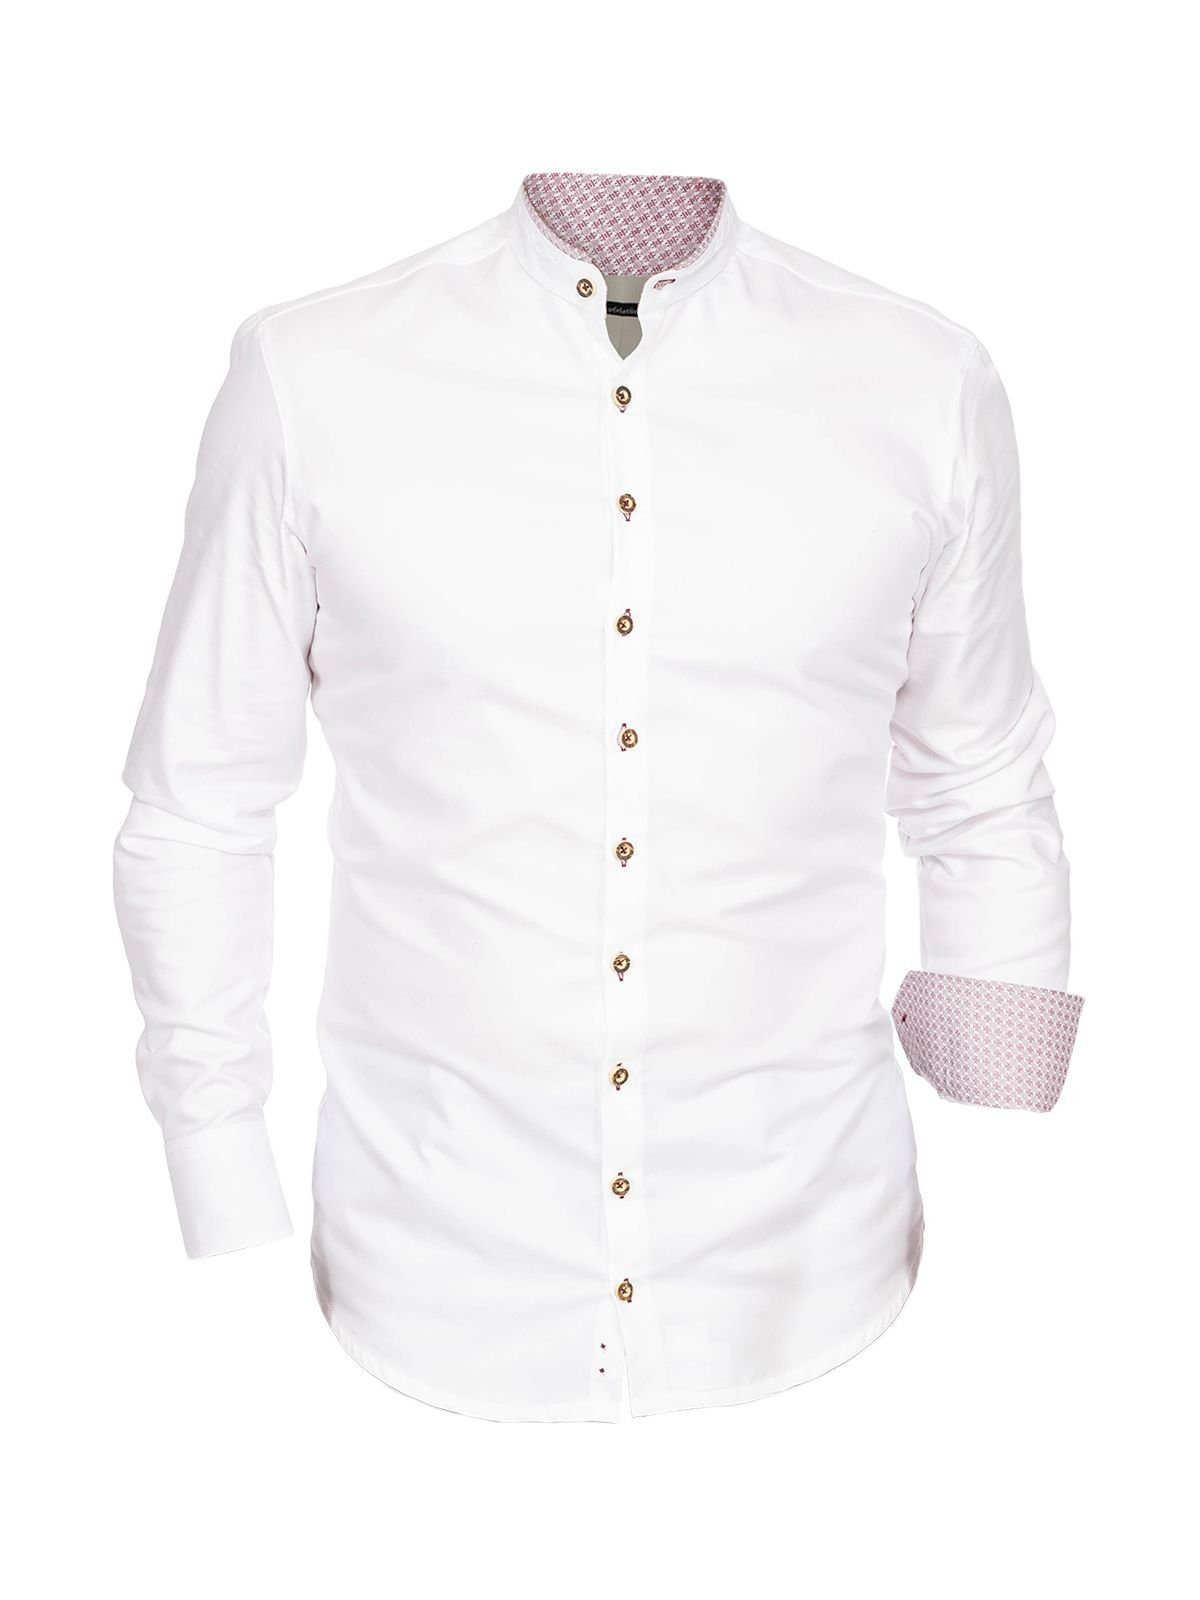 Gipfelstürmer Trachtenhemd Hemd Stehkragen 420004-3829-138 weiß hochrot (Slim | Trachtenhemden